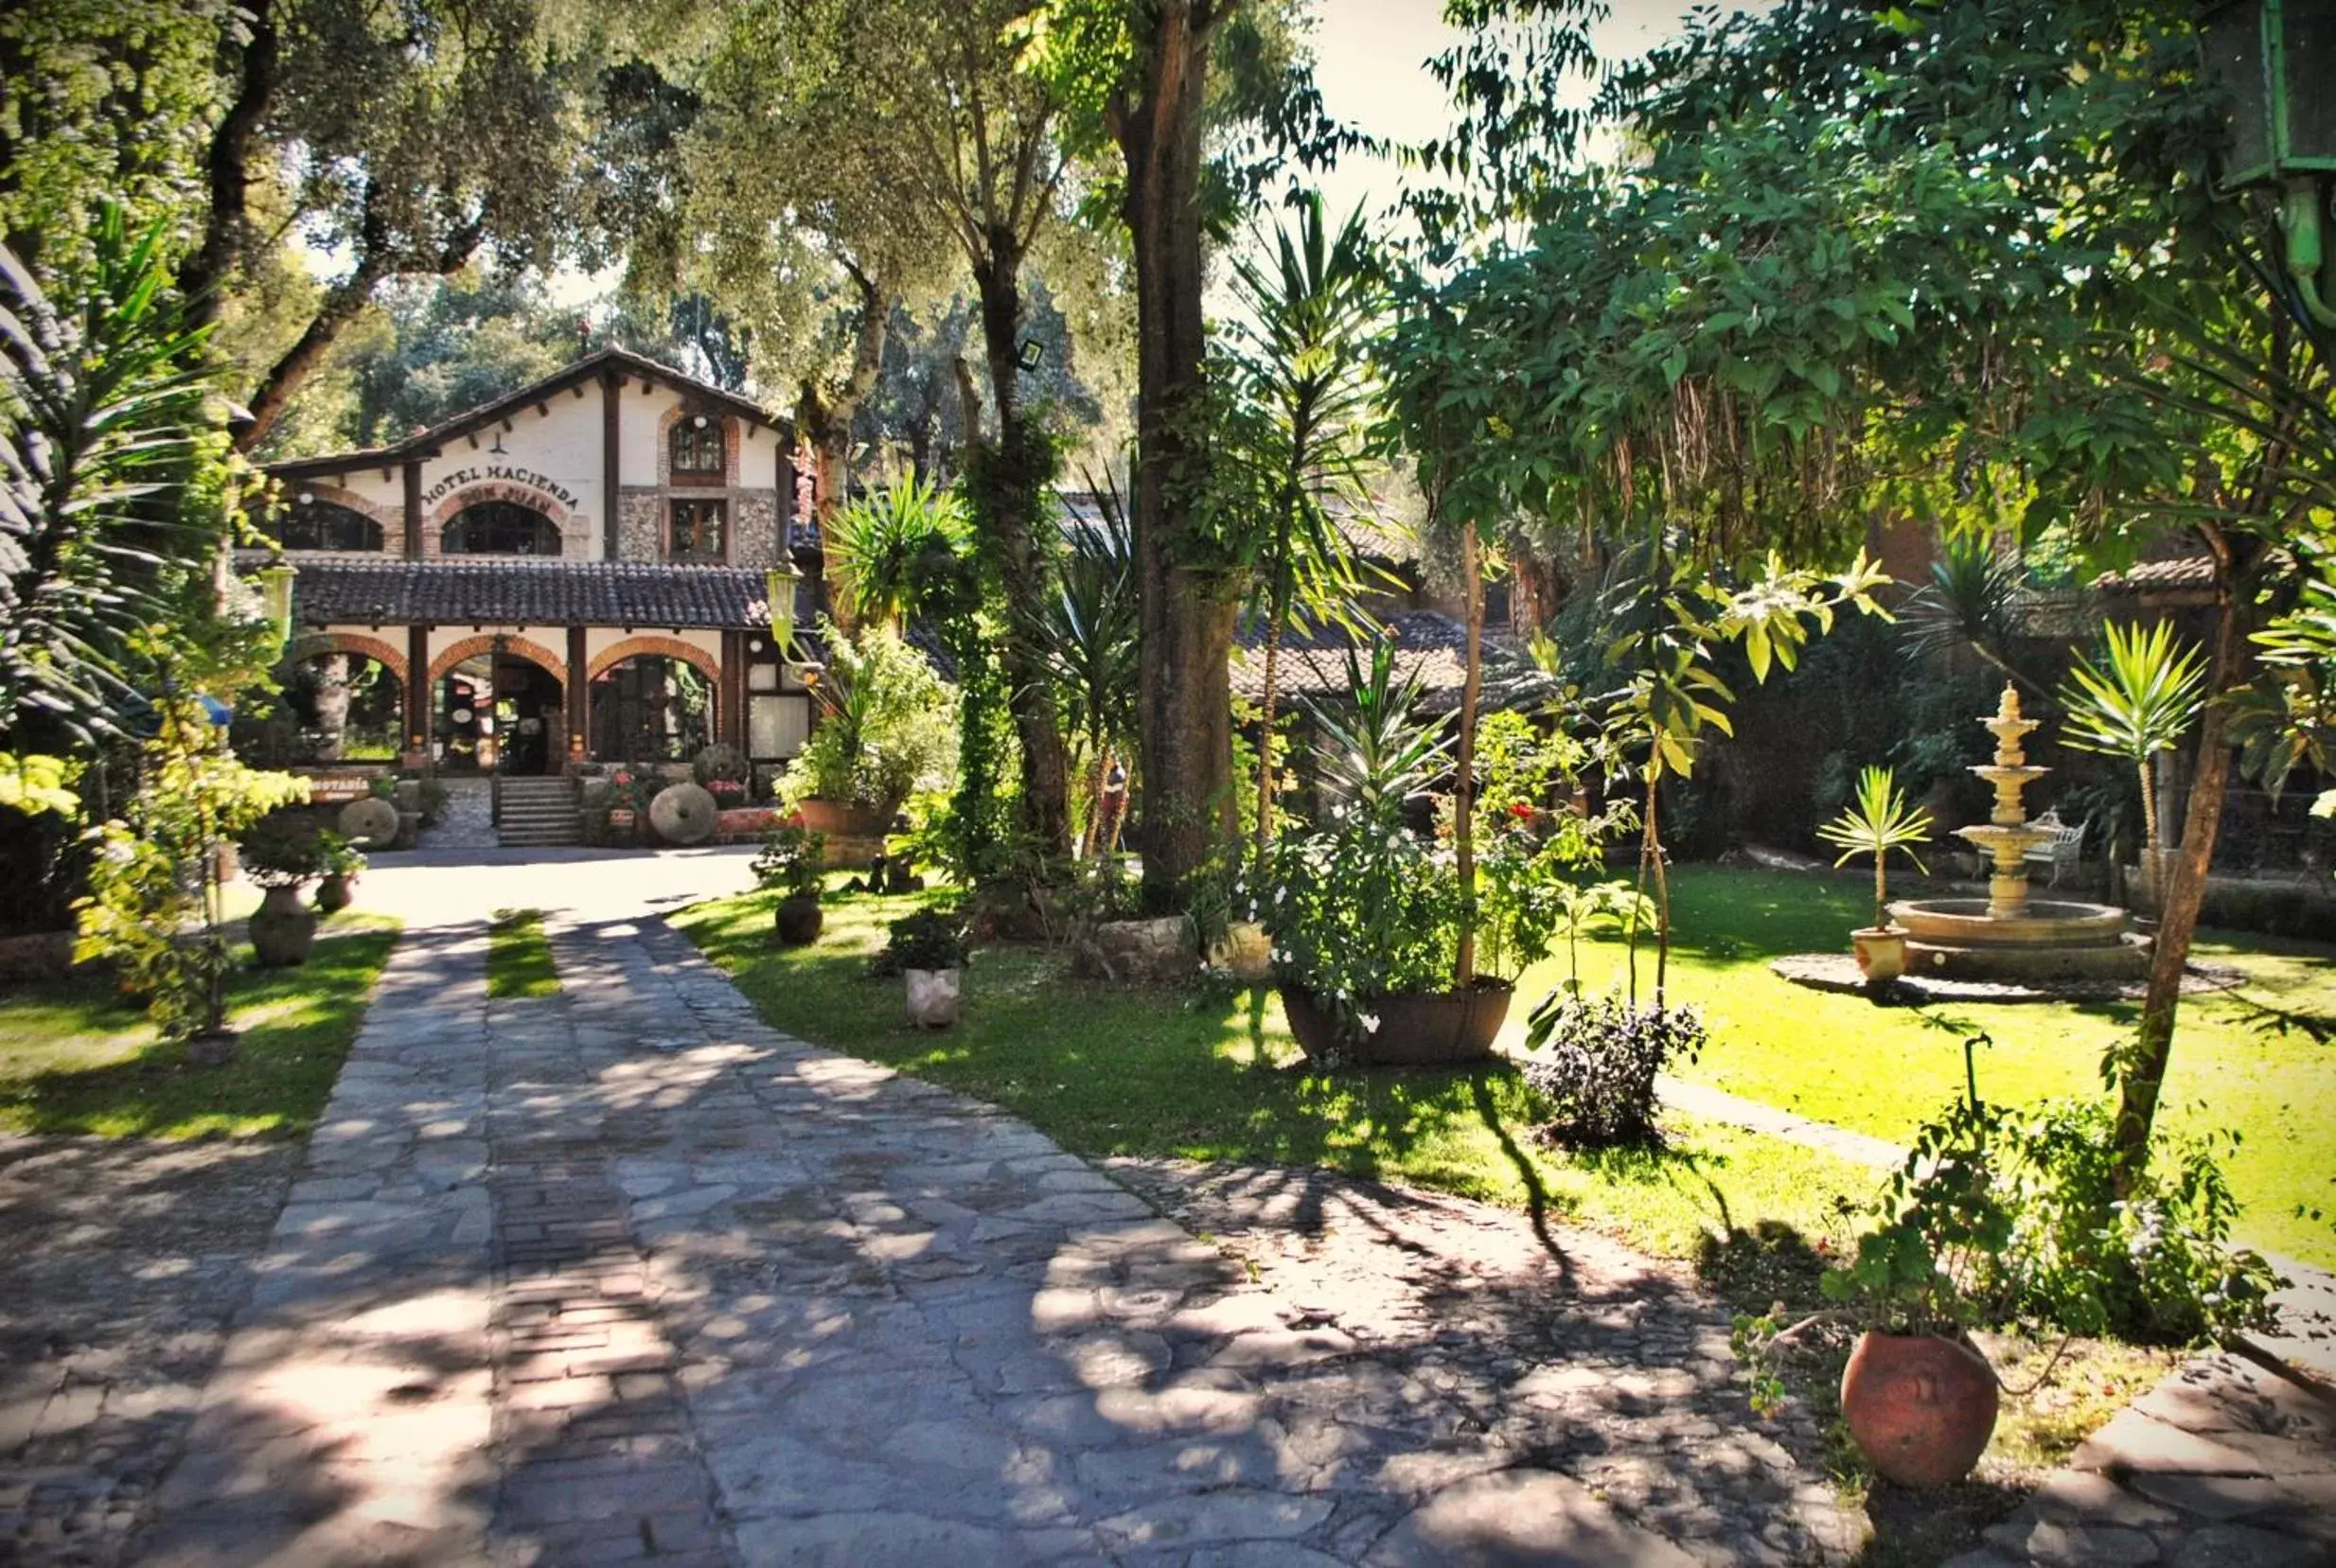 Off site, Garden in Hotel Hacienda Don Juan San Cristobal de las Casas Chiapas